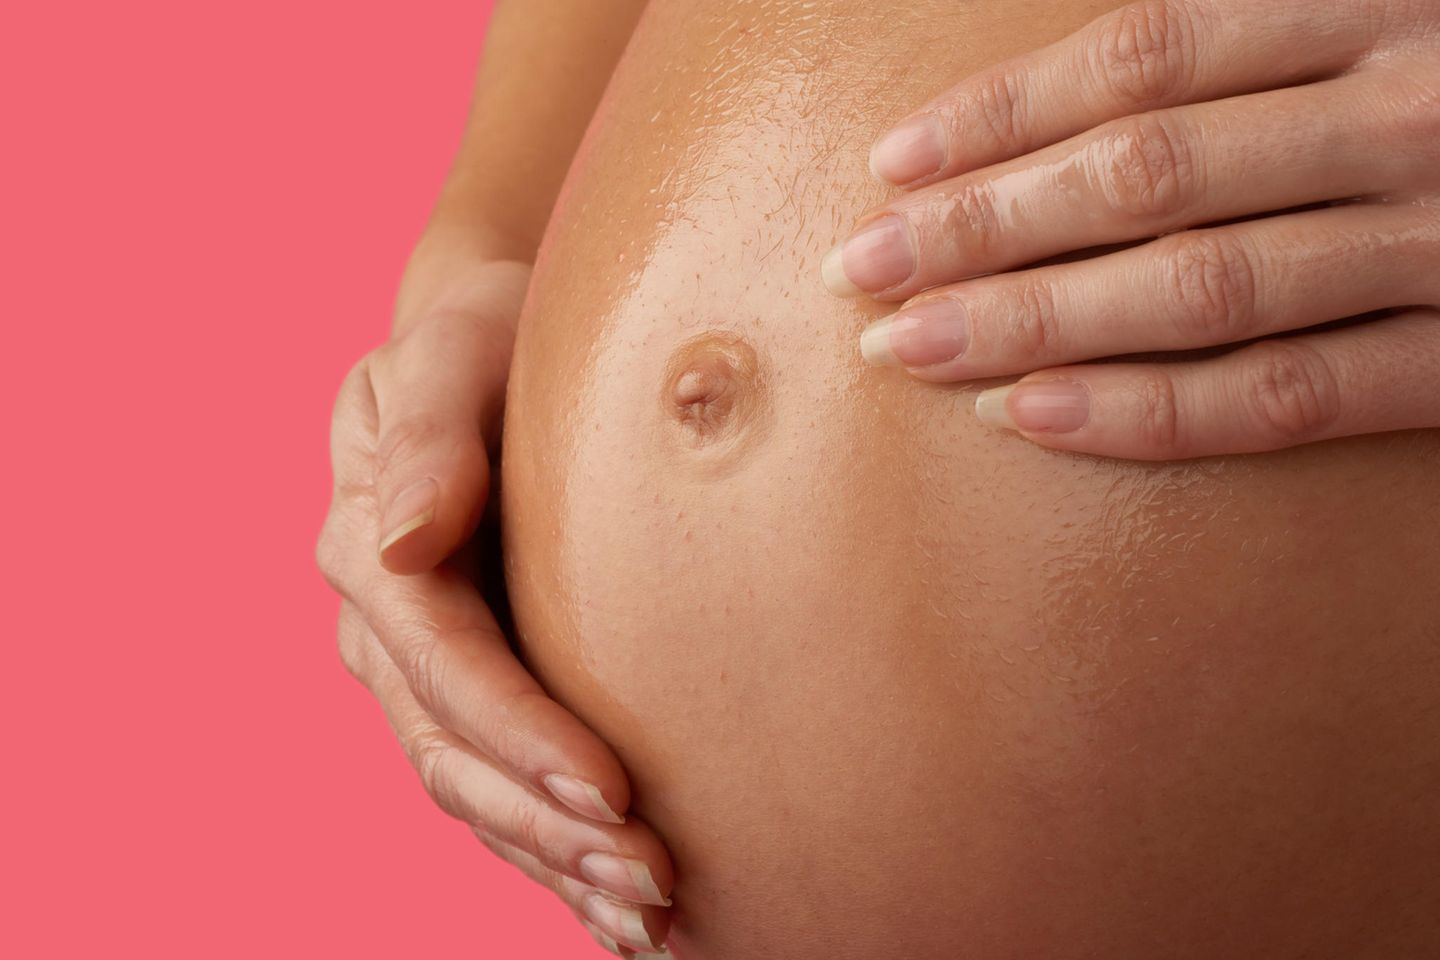 Schwangere ölt Bauch ein